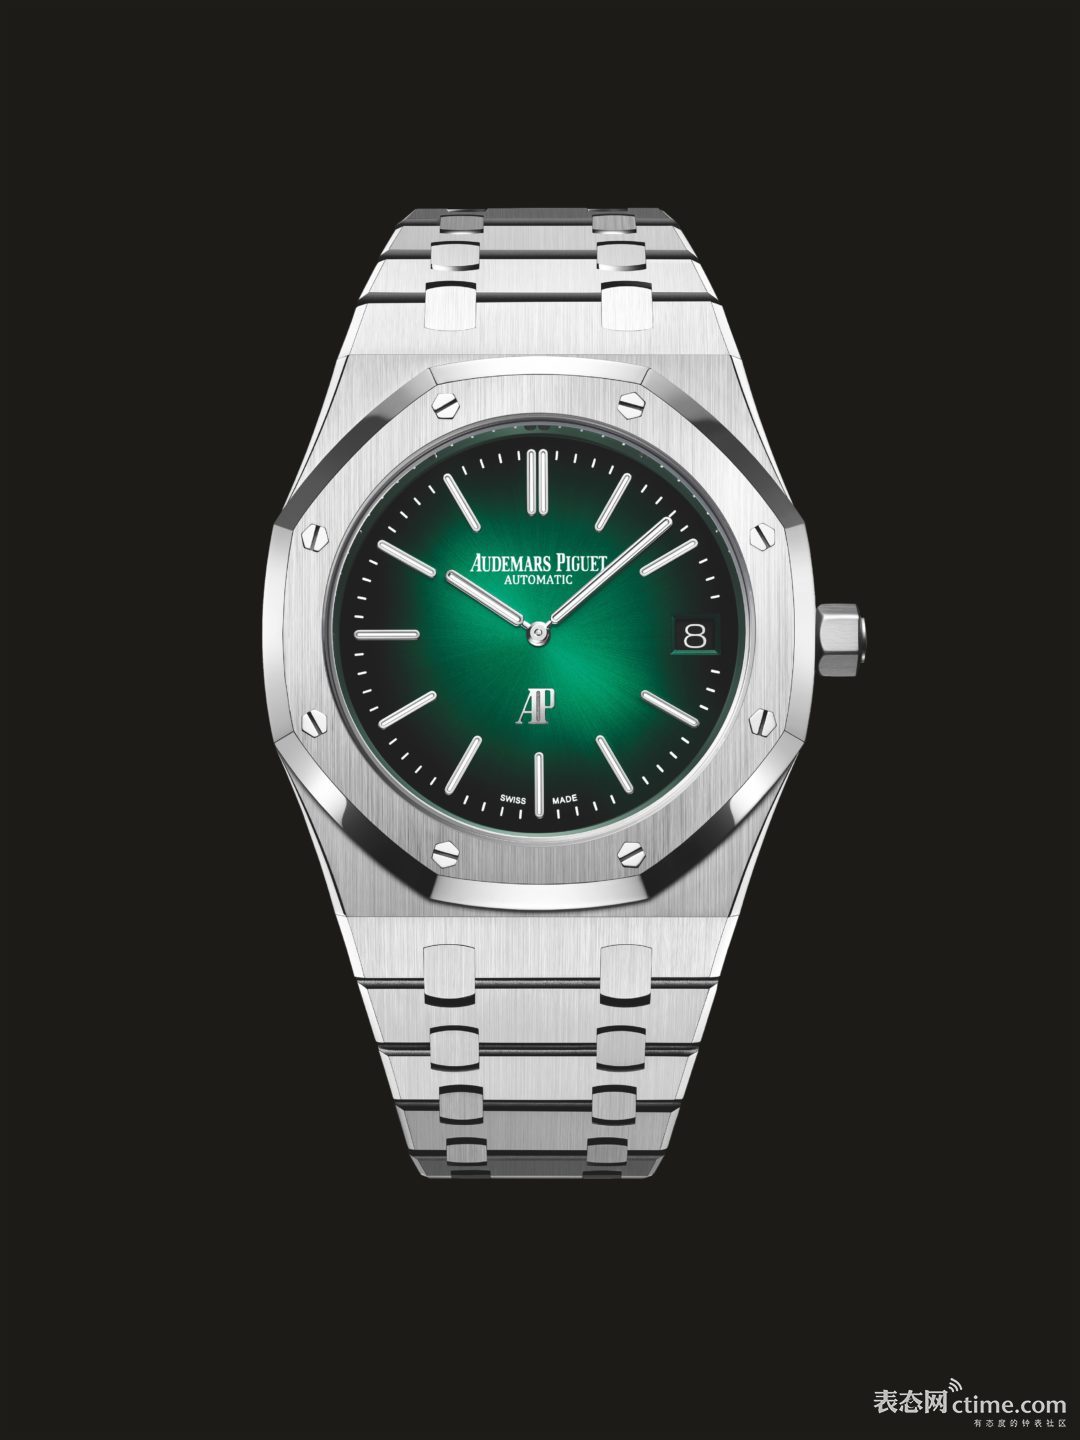 Audemars-Piguet-Royal-Oak-Jumbo-Extra-Thin-winning-watch-of-the-Iconic-Watch-Prize-2021.jpeg